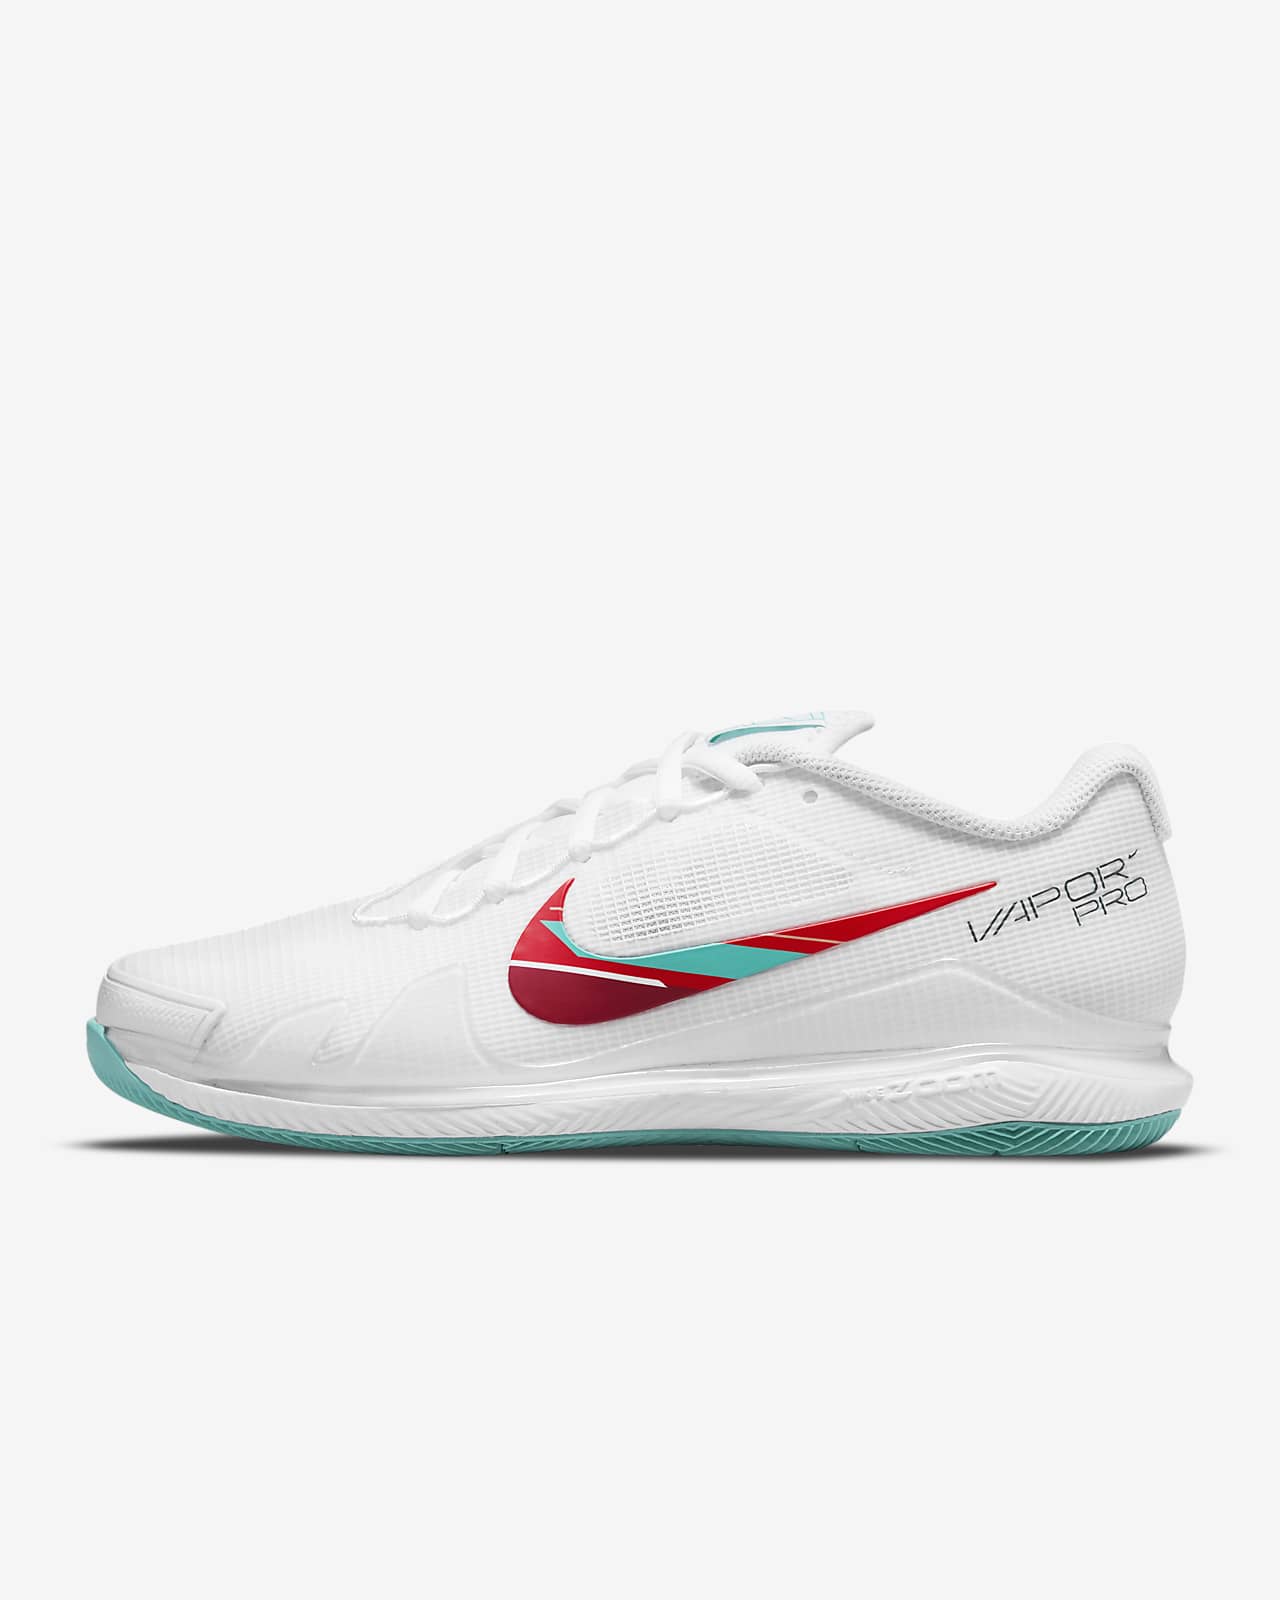 غذاء ملكات النحل للاطفال NikeCourt Air Zoom Vapor Pro Women's Hard-Court Tennis Shoe. Nike LU غذاء ملكات النحل للاطفال